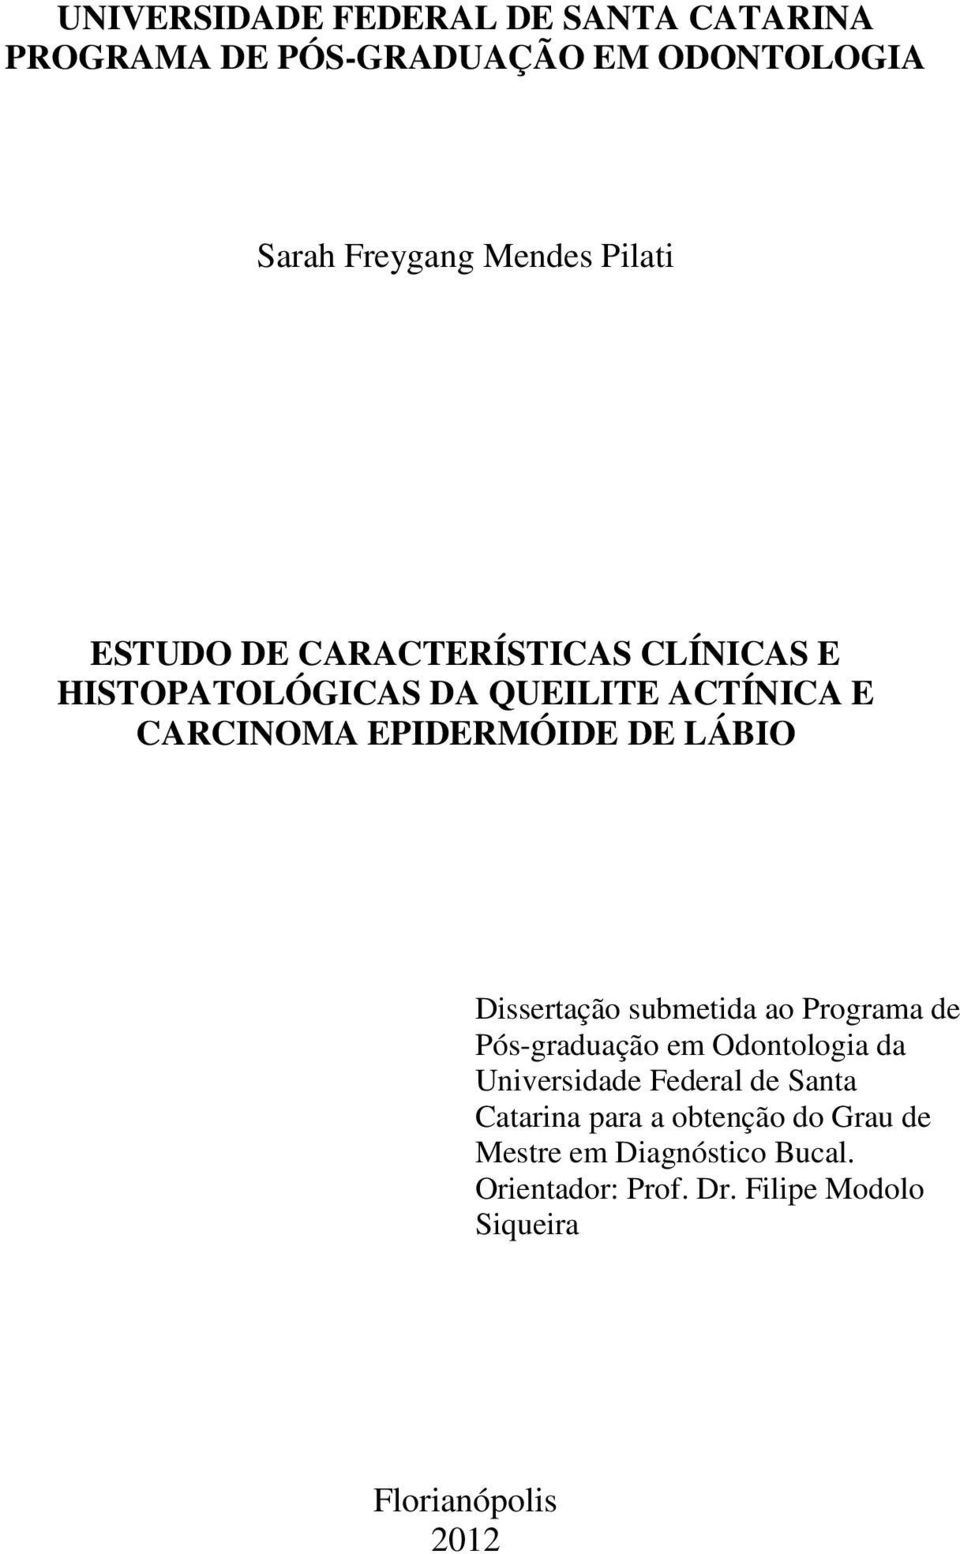 EPIDERMÓIDE DE LÁBIO Dissertção submetid o Progrm de Pós-grdução em Odontologi d Universidde Federl de